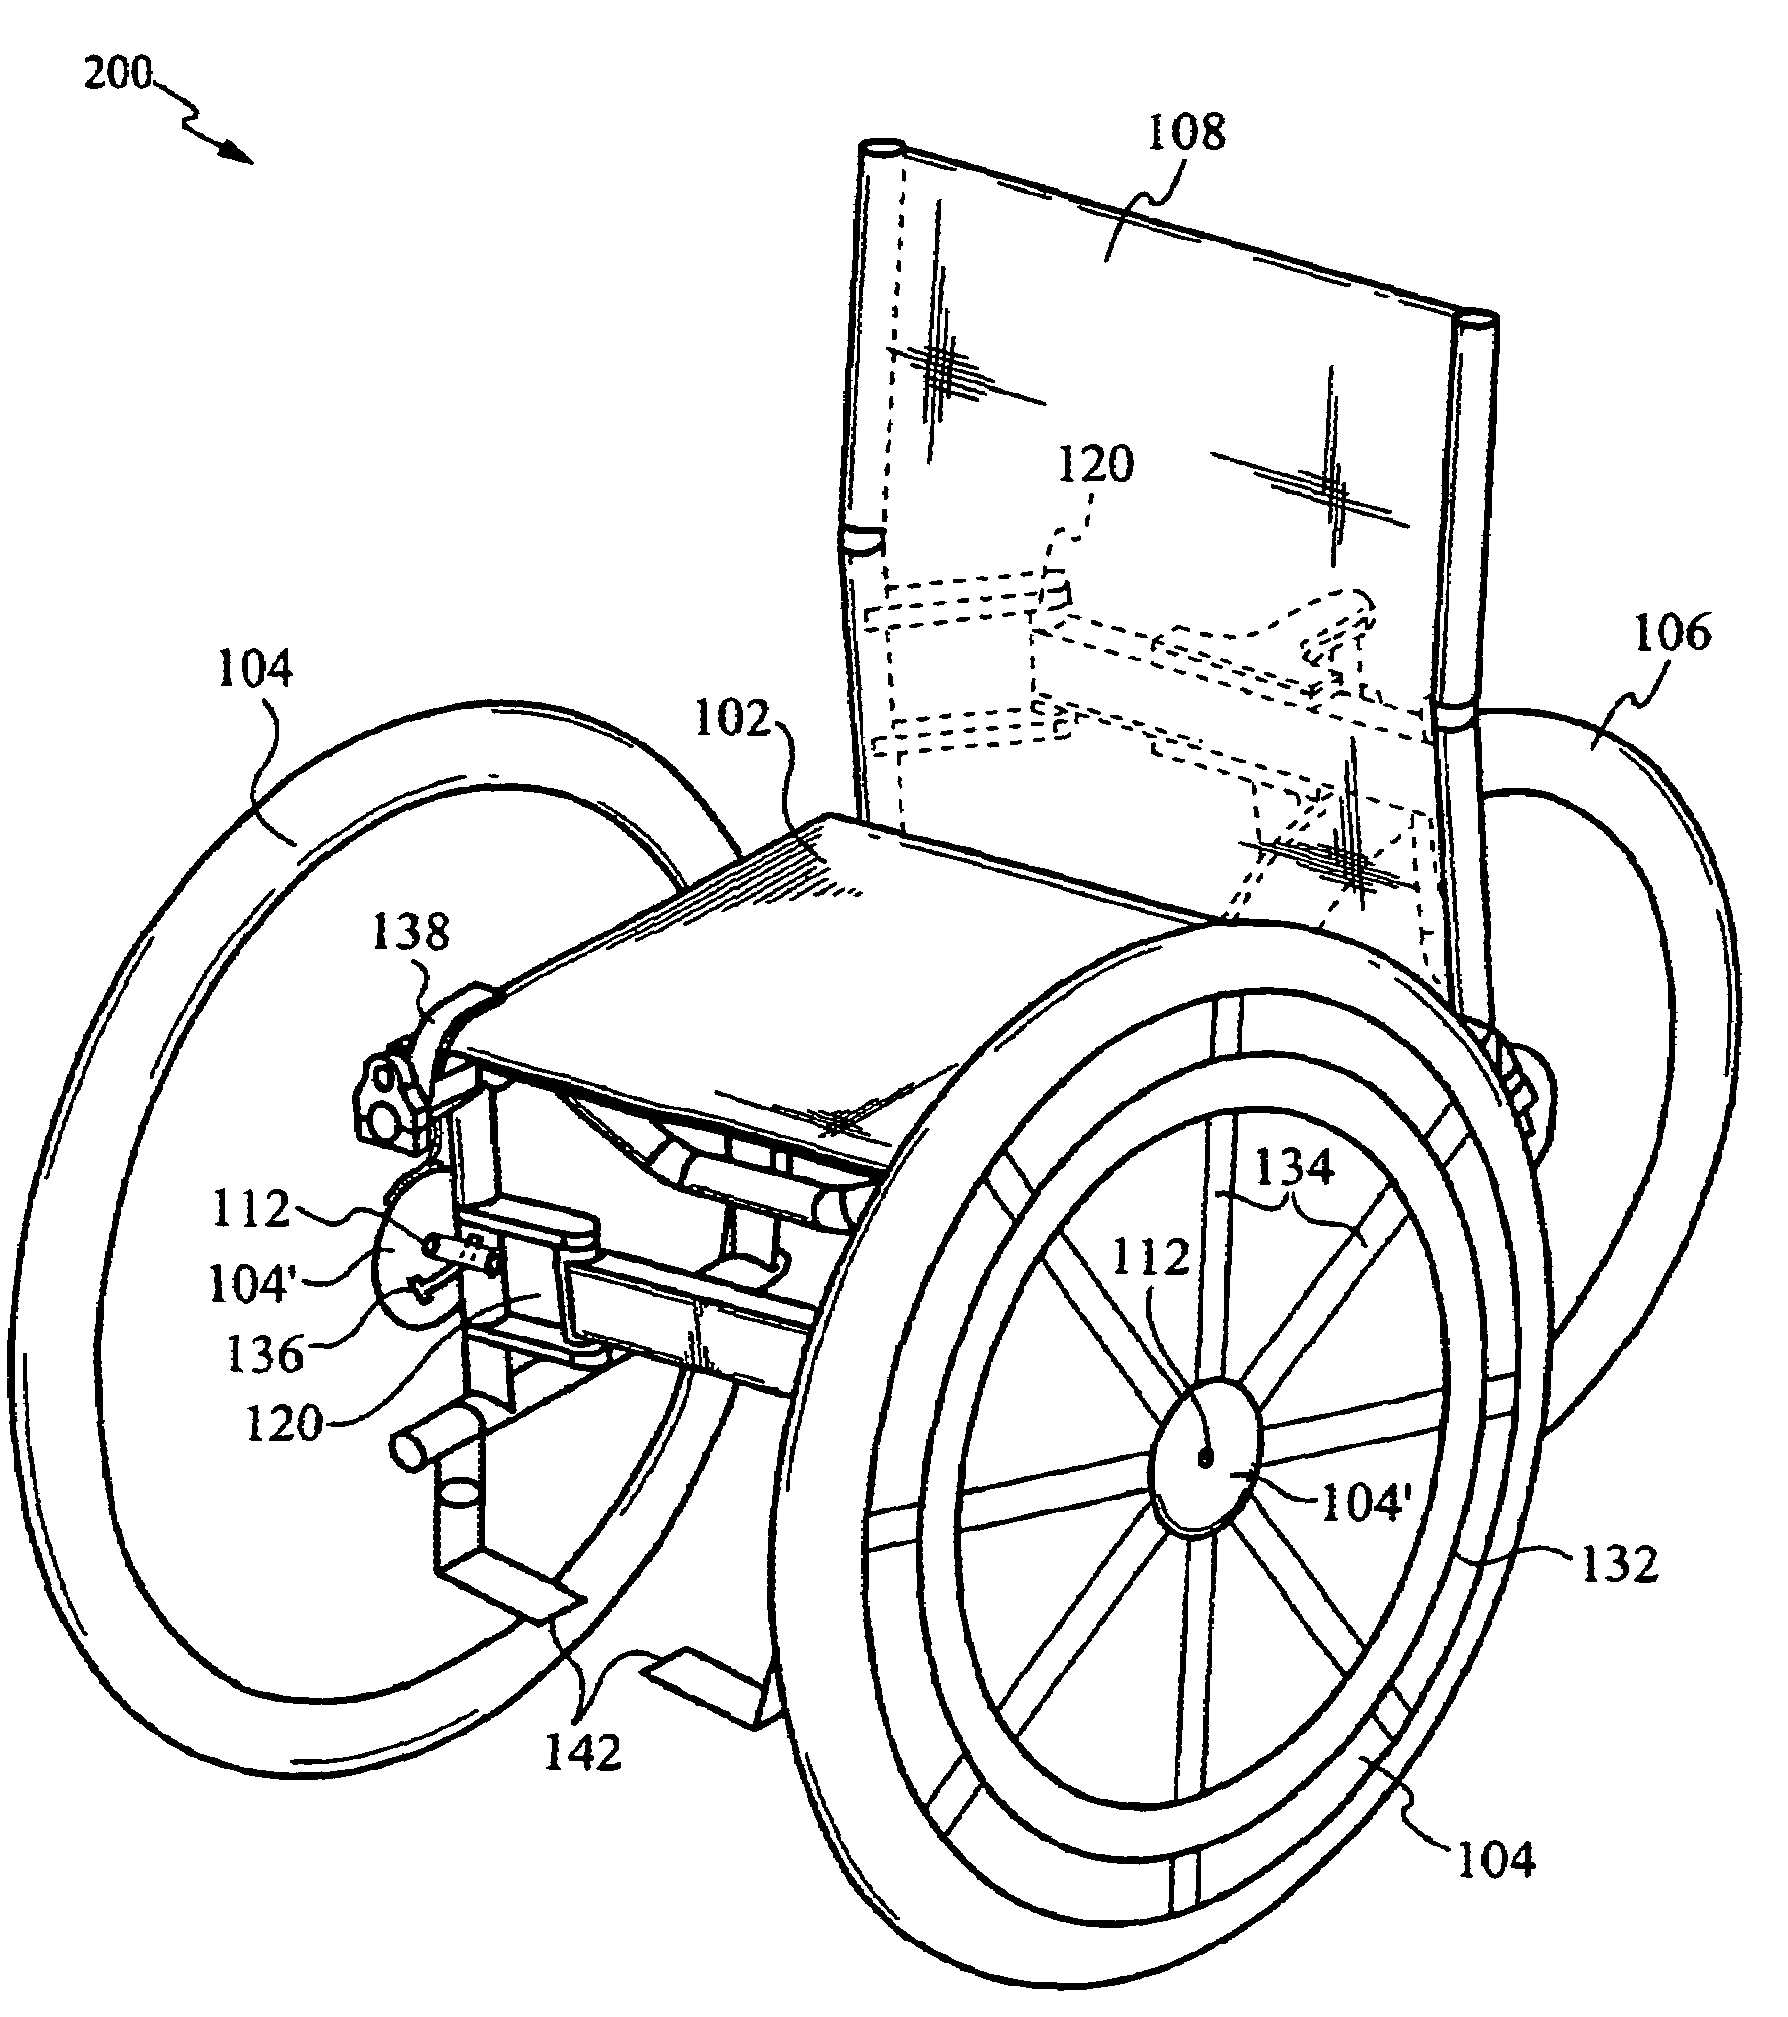 Multi-terrain wheel chair